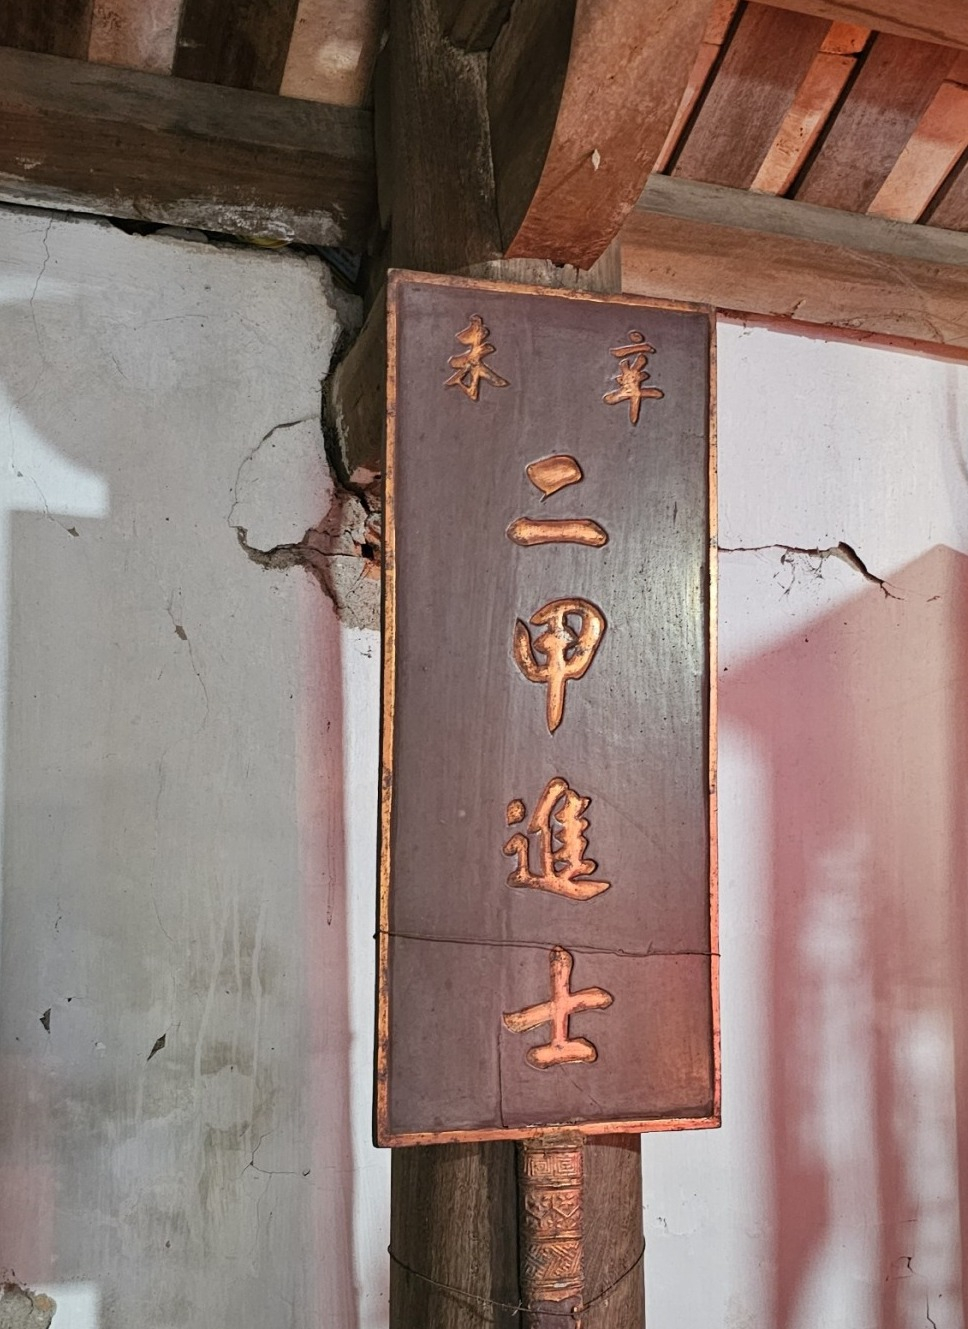 Tấm biển vua Tự Đức ban cho Nguyễn Khuyến. Trên có các chữ Hán: Ân tứ vinh quy. Nhị giáp tiến sĩ